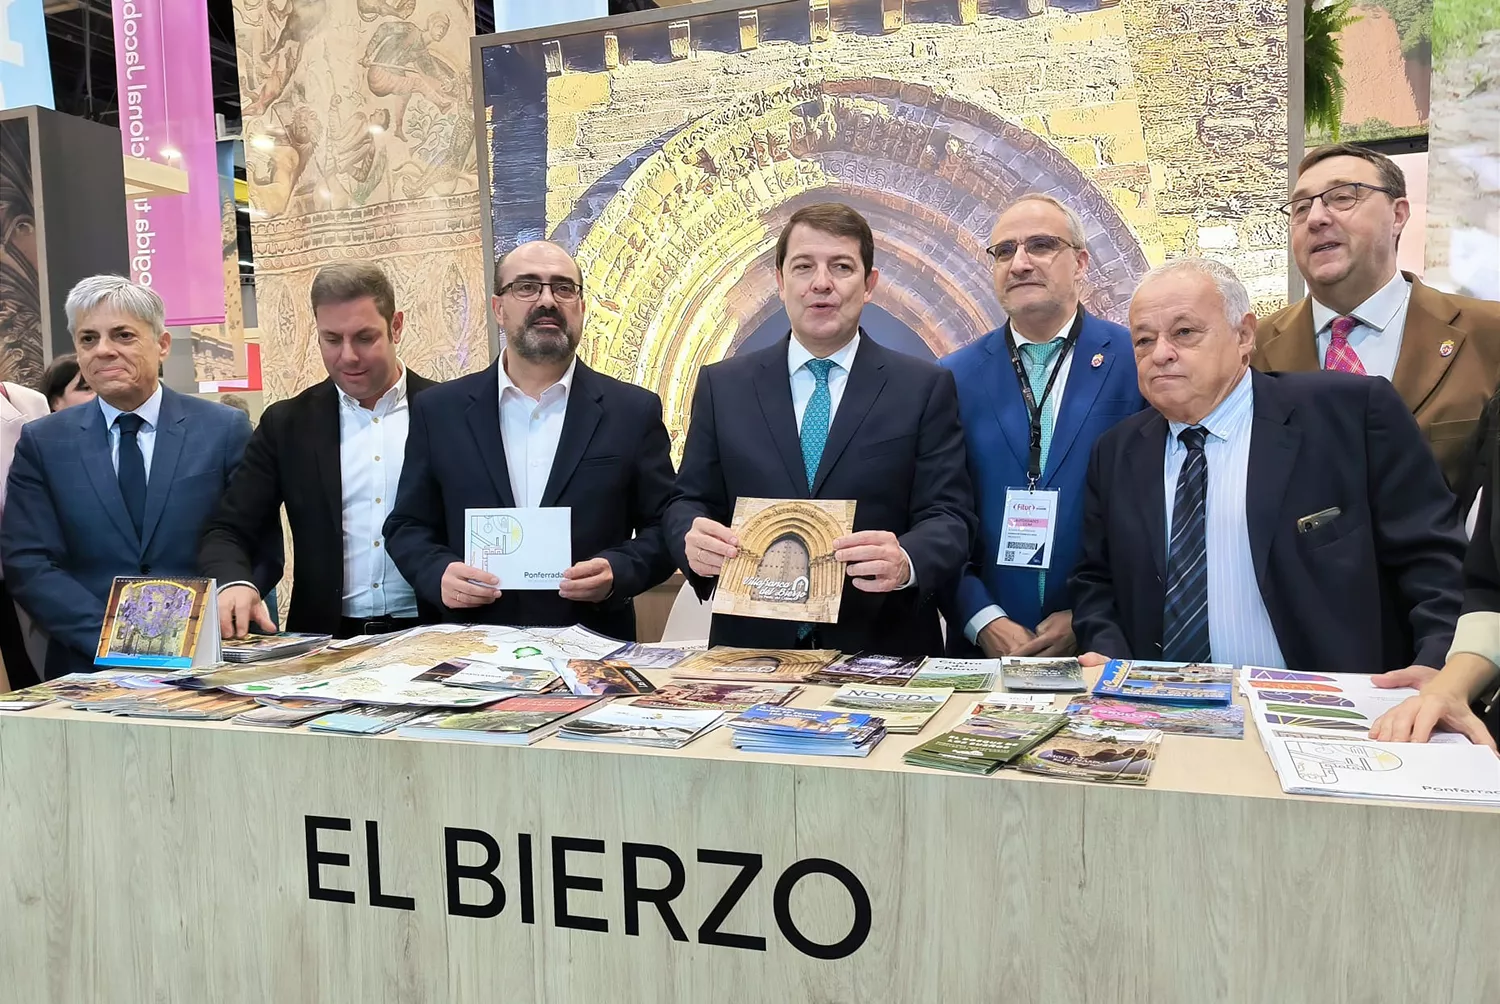 El Bierzo presenta una oferta basada en su riqueza paisajística, tradiciones y patrimonio